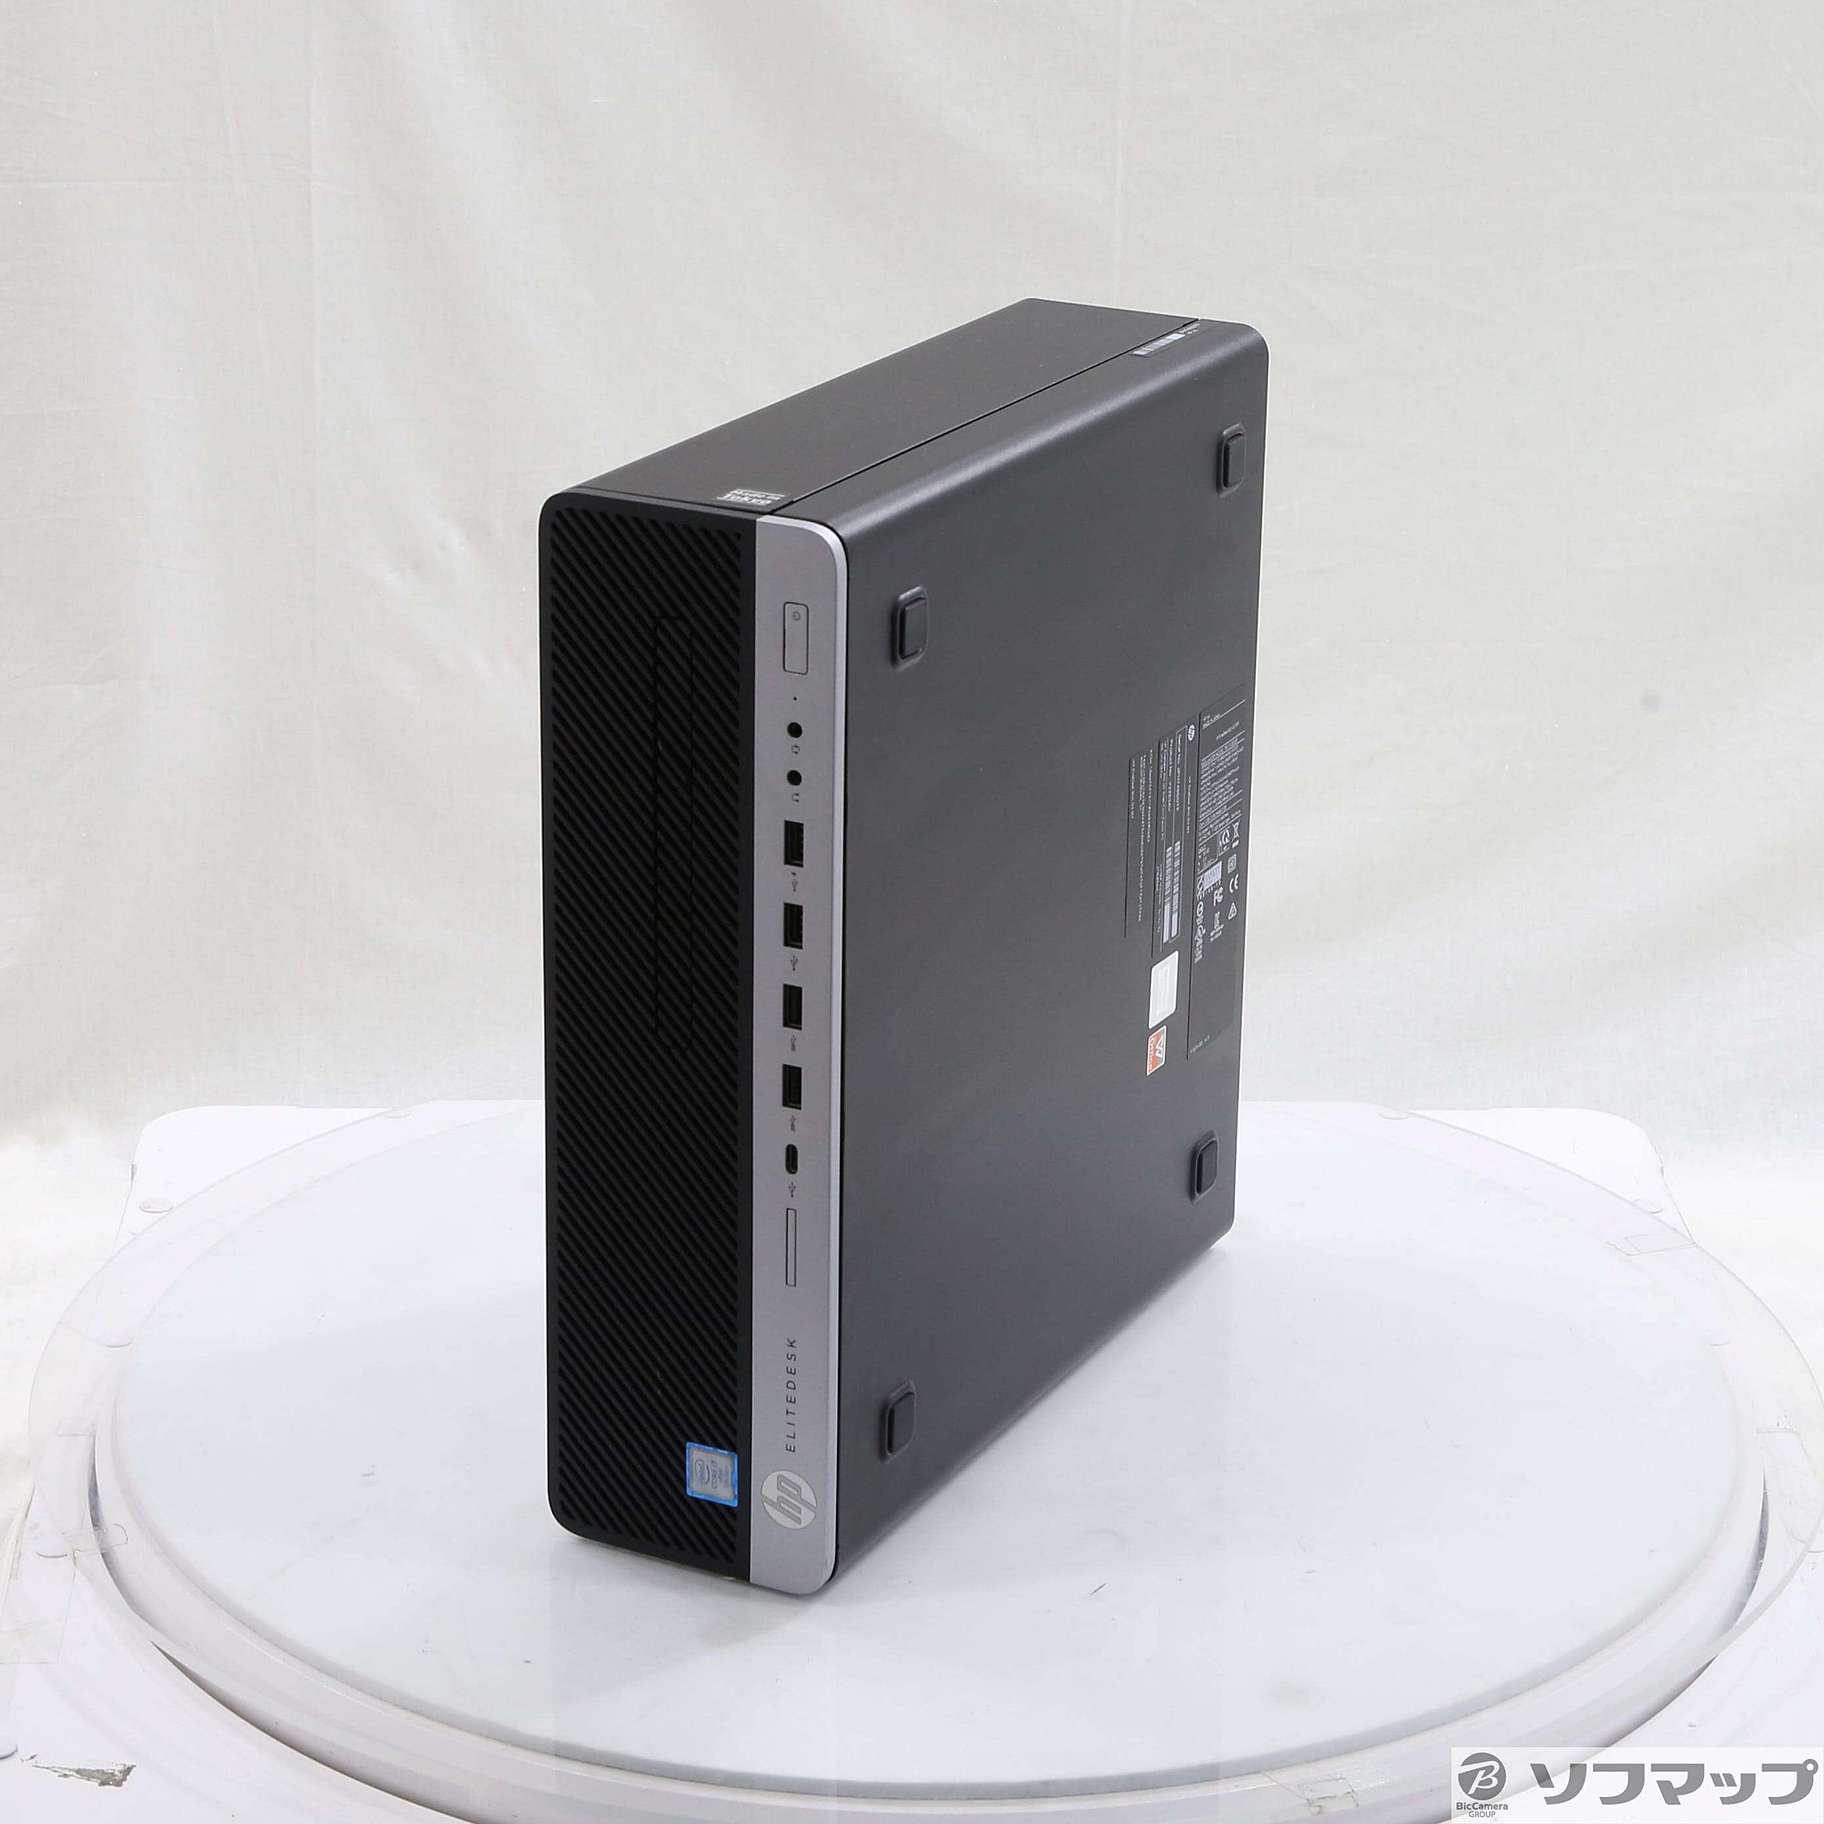 セールス大容量HDD4TB! HP EliteDesk 800 G2 SFF Win10 Windowsデスクトップ